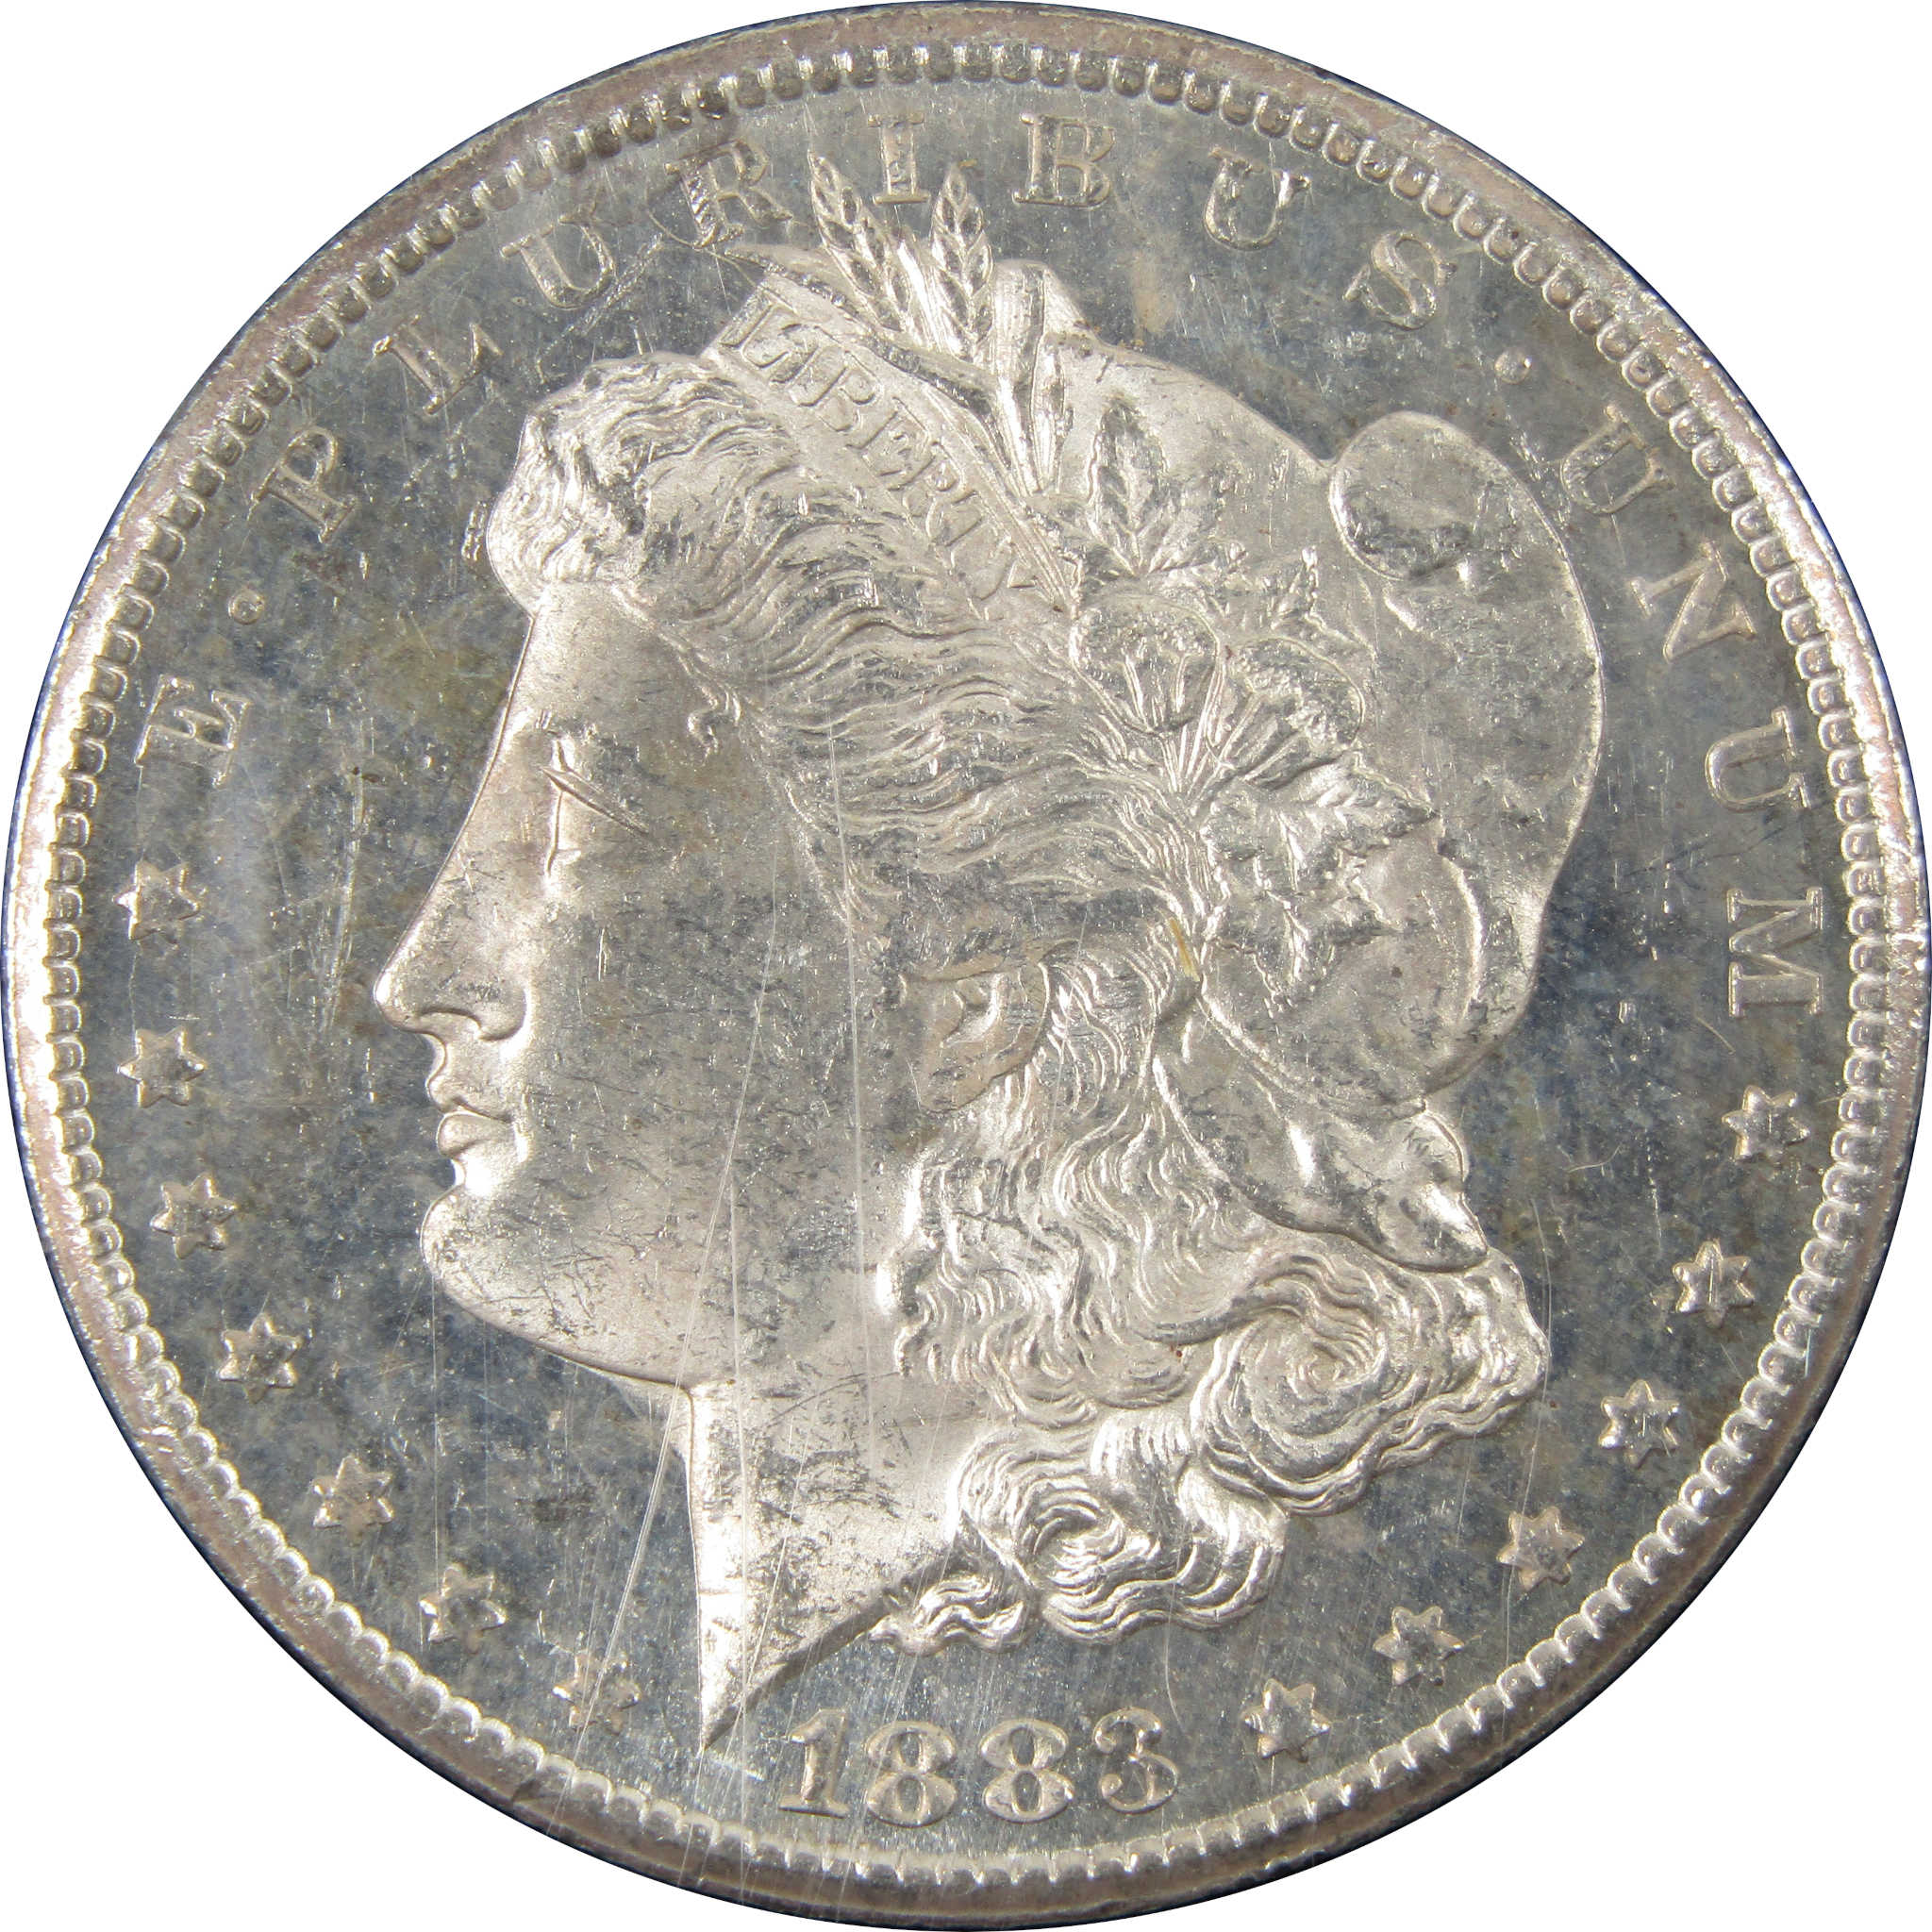 1883 CC GSA Morgan Dollar BU Choice Uncirculated Silver $1 SKU:I9436 - Morgan coin - Morgan silver dollar - Morgan silver dollar for sale - Profile Coins &amp; Collectibles